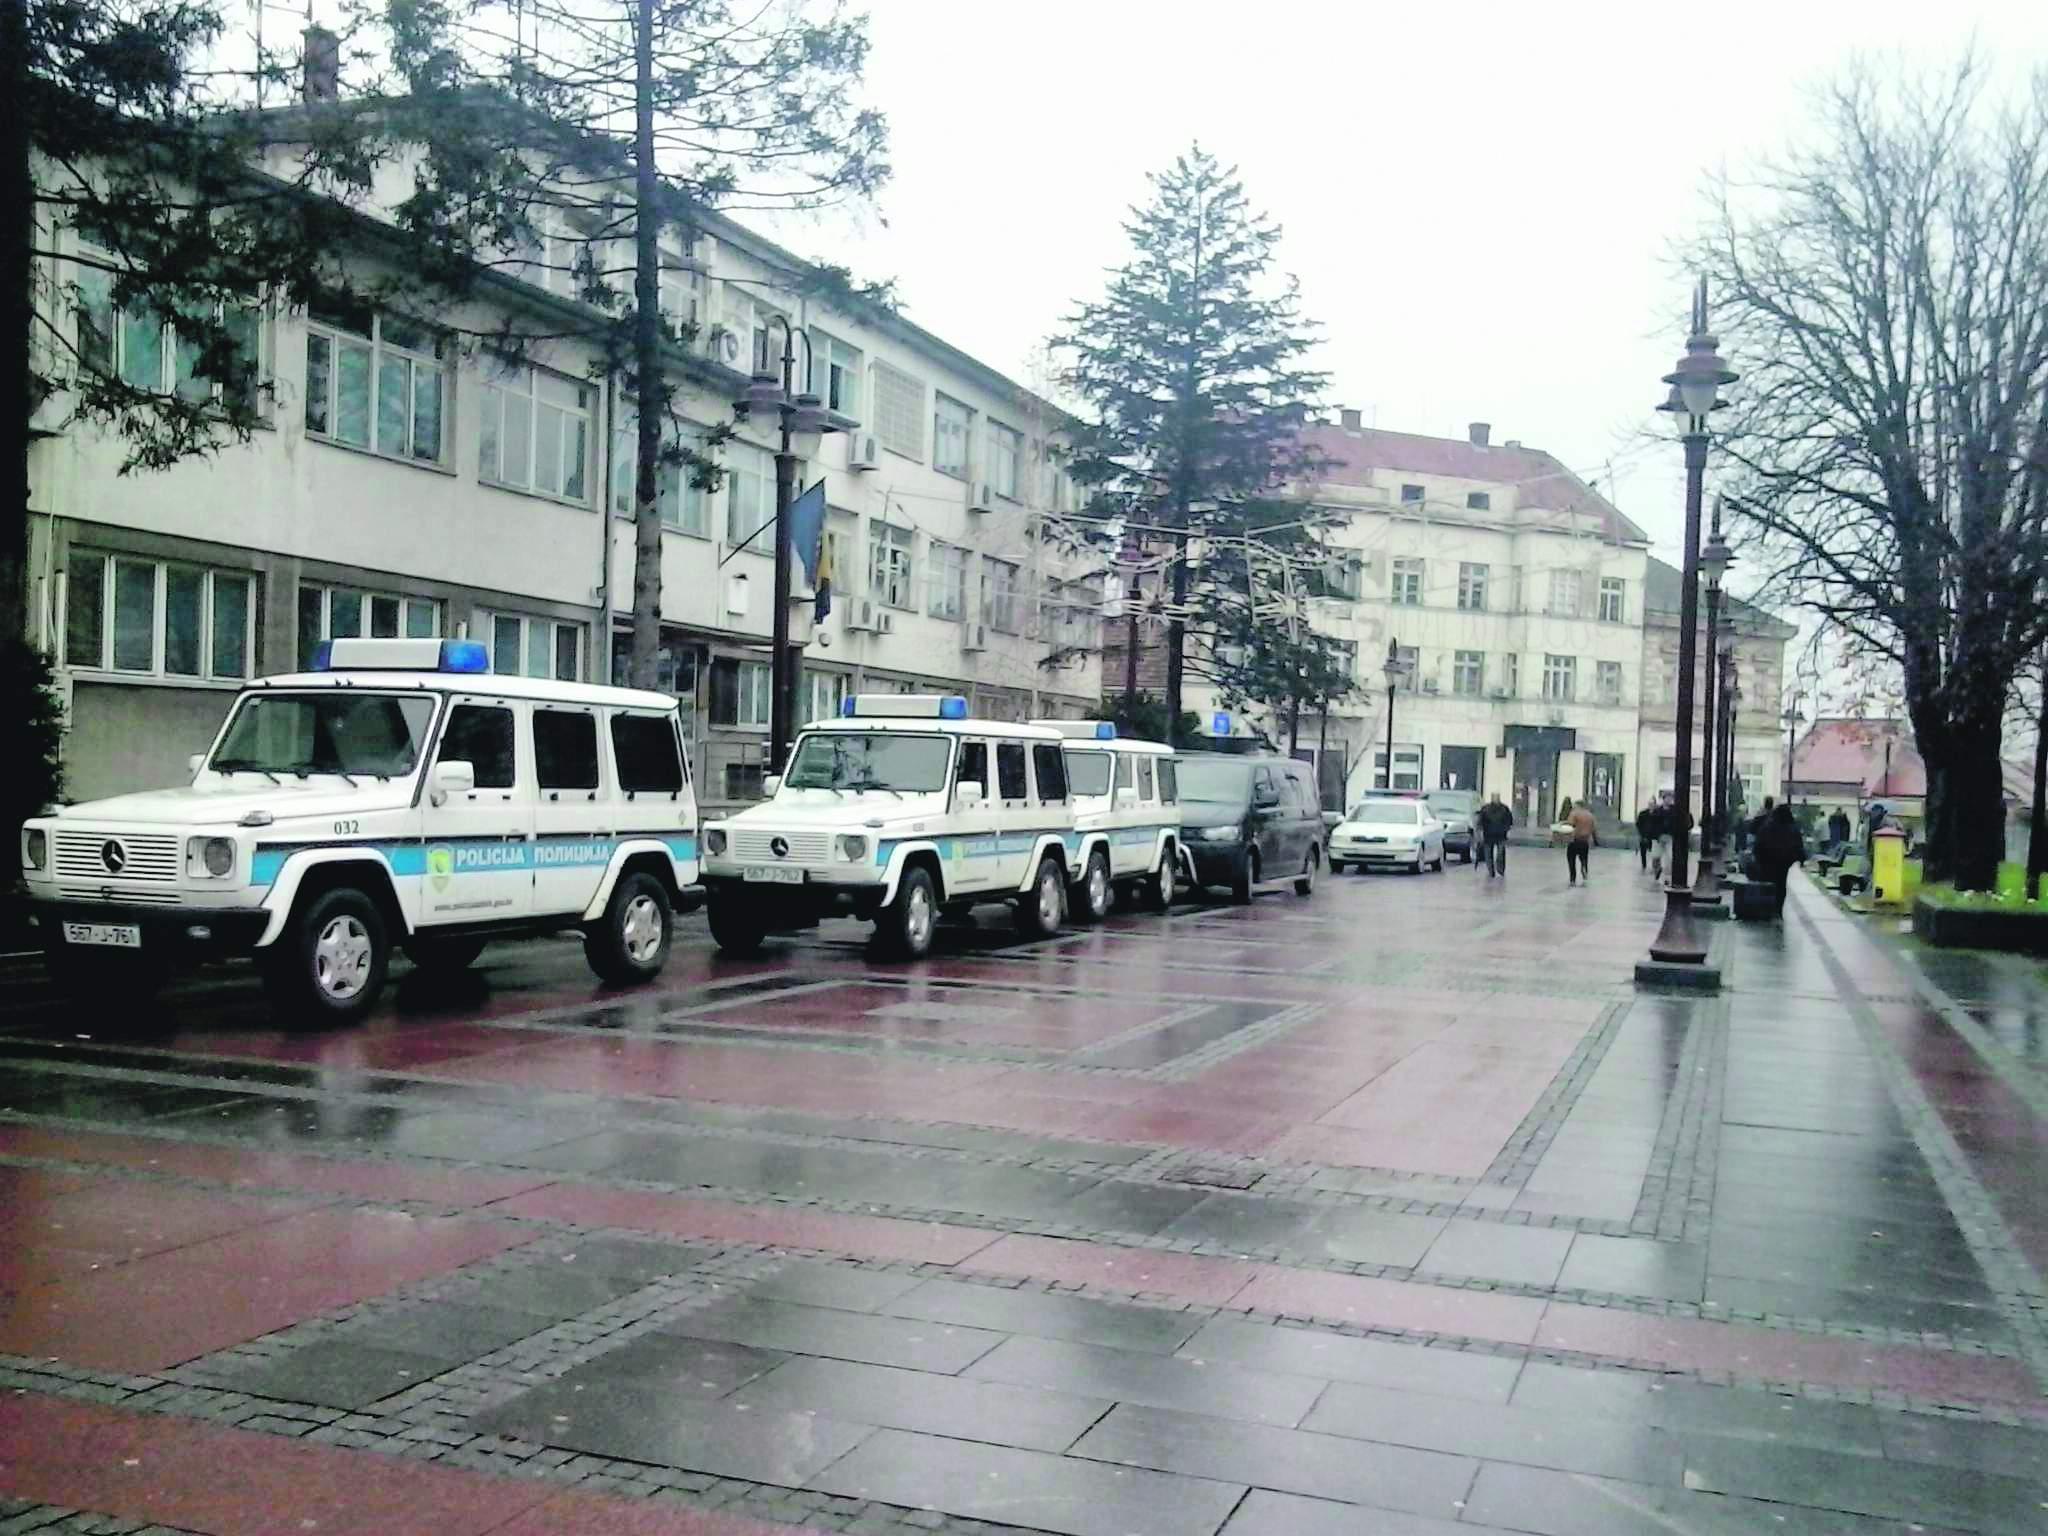 Policija blokirala zaselak Peškiri kod Brčkog jer su stanovnici bili u kontaktu s osobom zaraženom koronavirusom